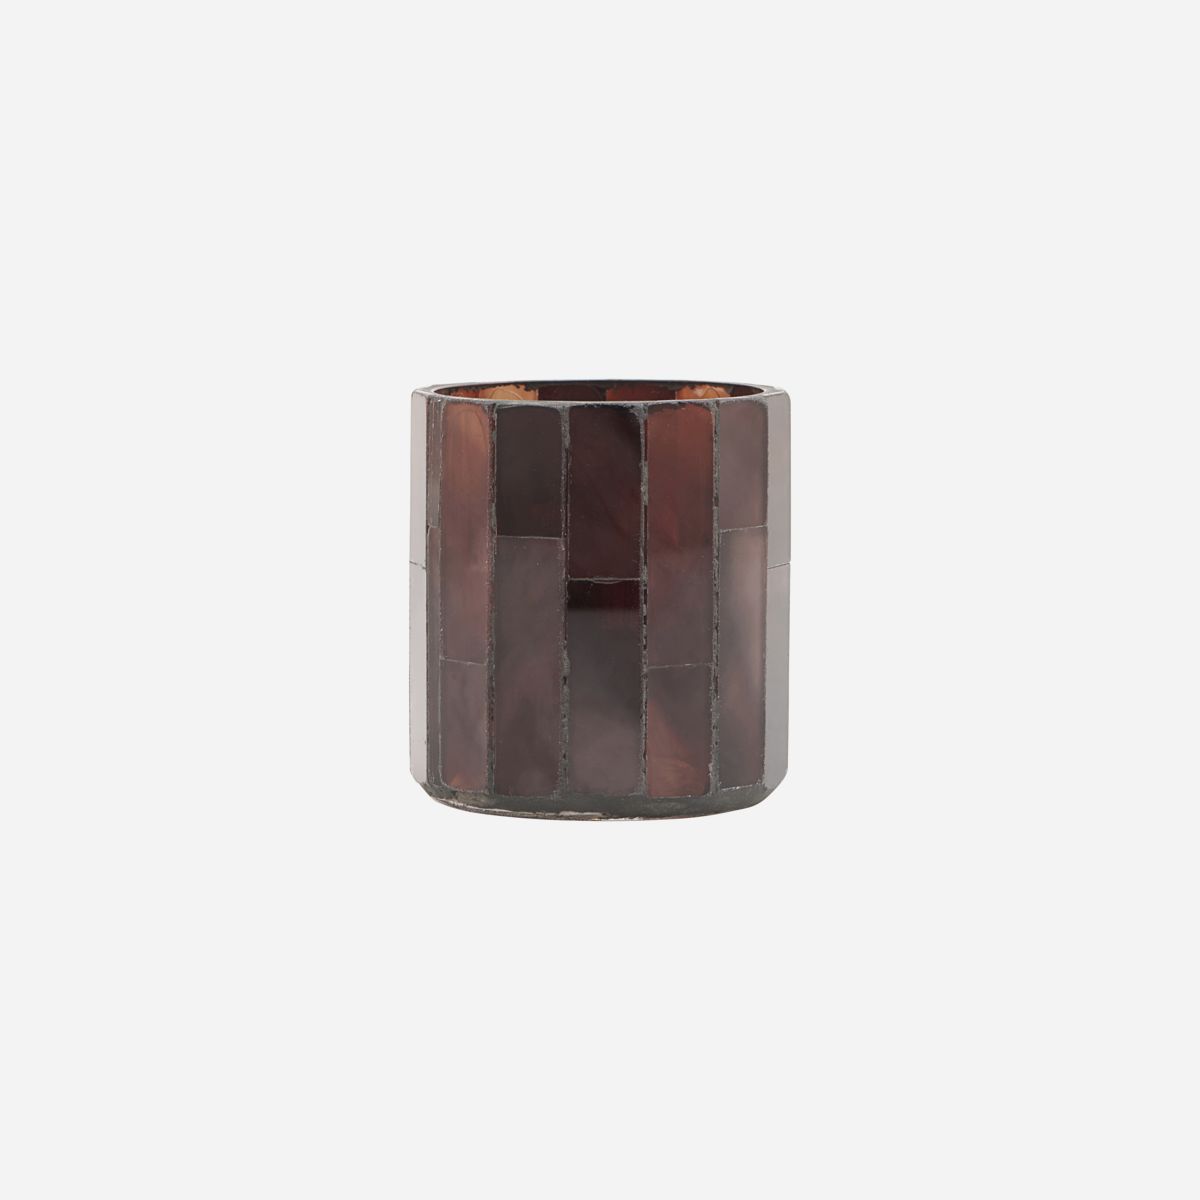 Photophore verre mosaique Amroha brown 8x6,5cm